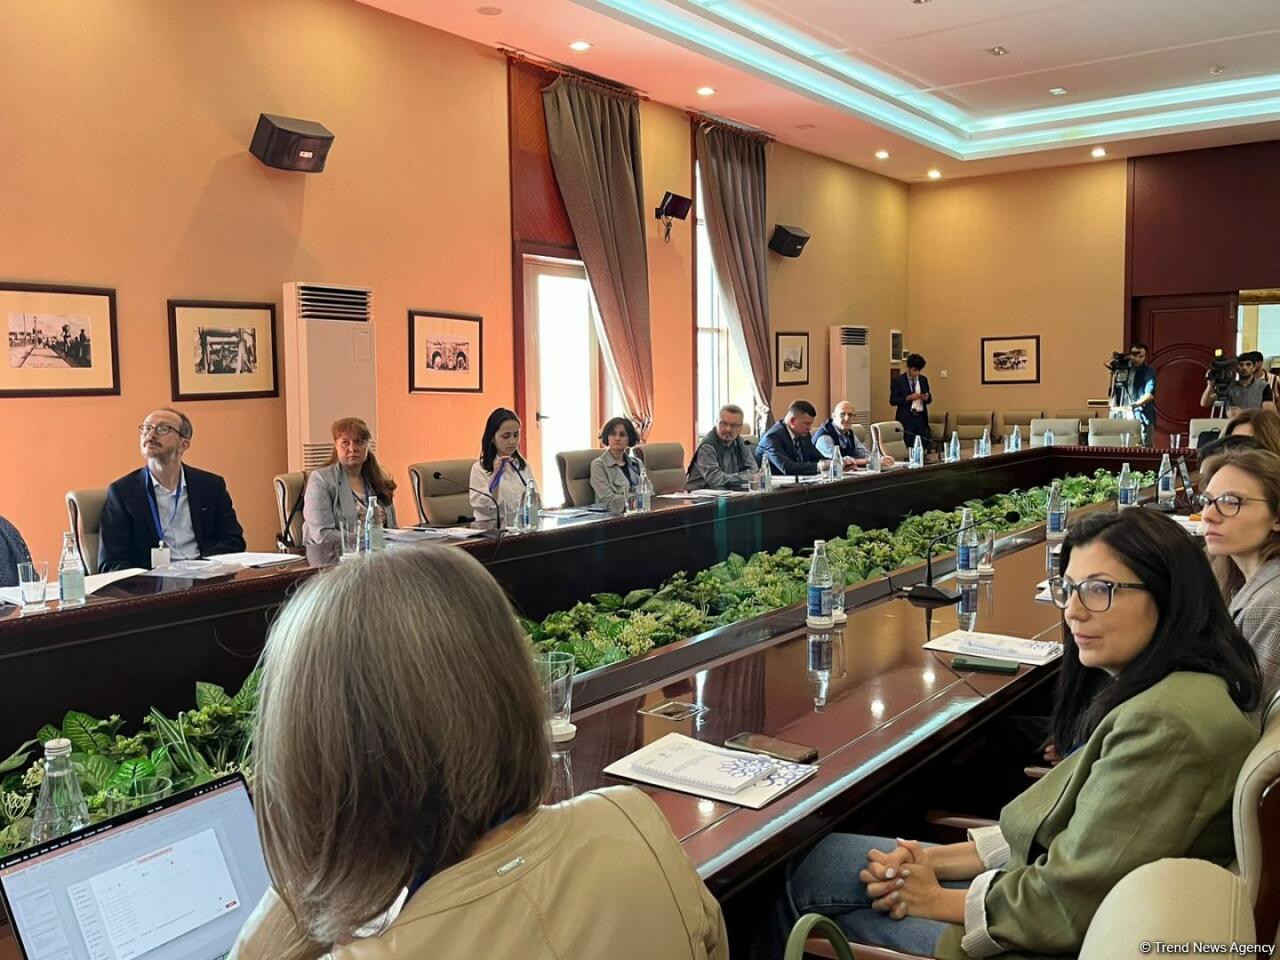 Эксперты из 17 стран мира собрались в Баку на мероприятии по обмену опытом в области культурного наследия